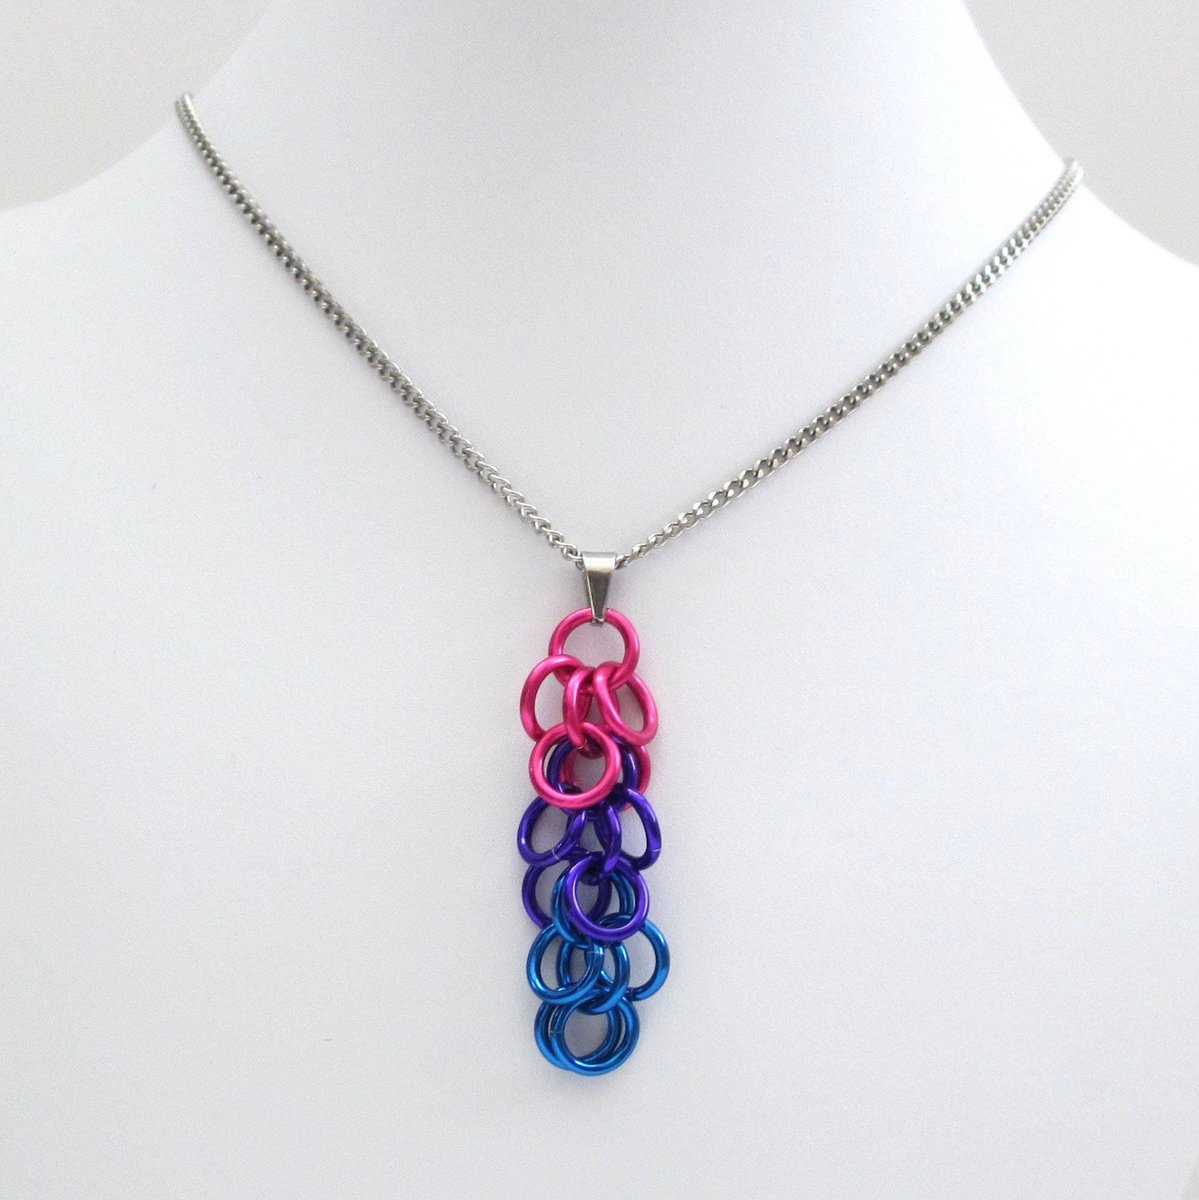 Chainmail bisexual pride pendant, shaggy loop weave; pink purple blue bi pride jewelry